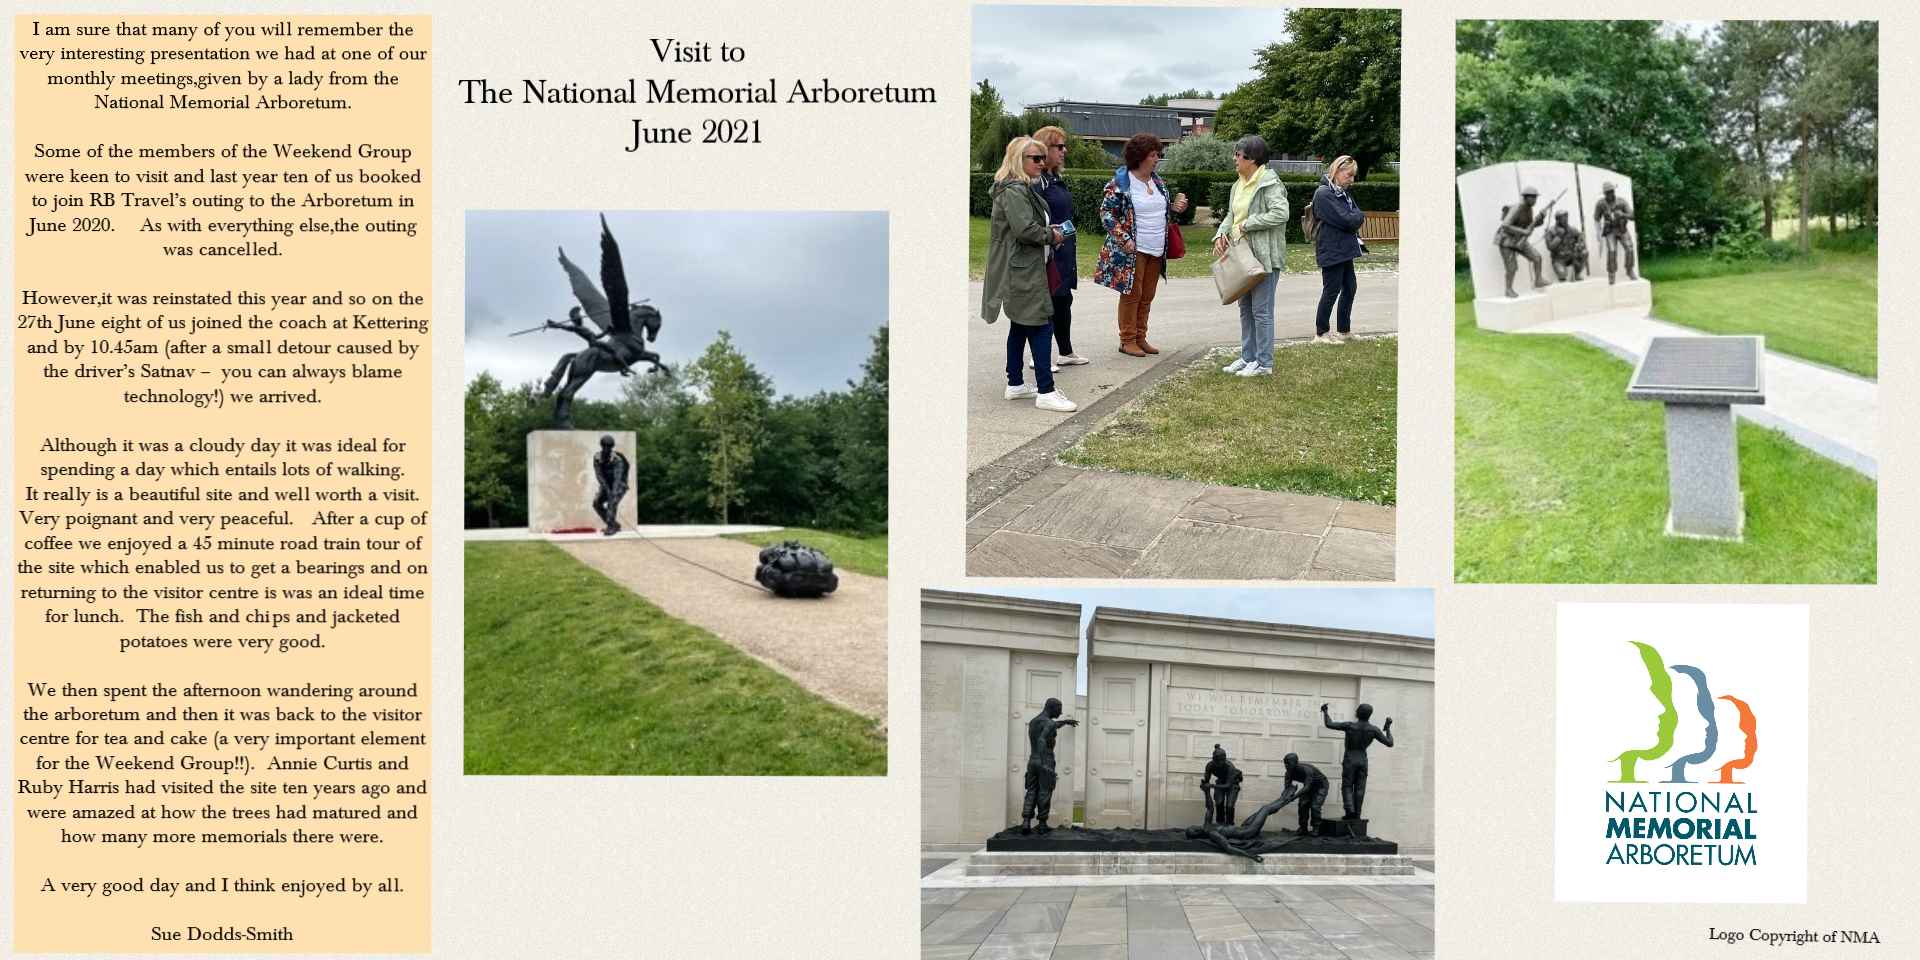 Visit to the National Memorial Arboretum